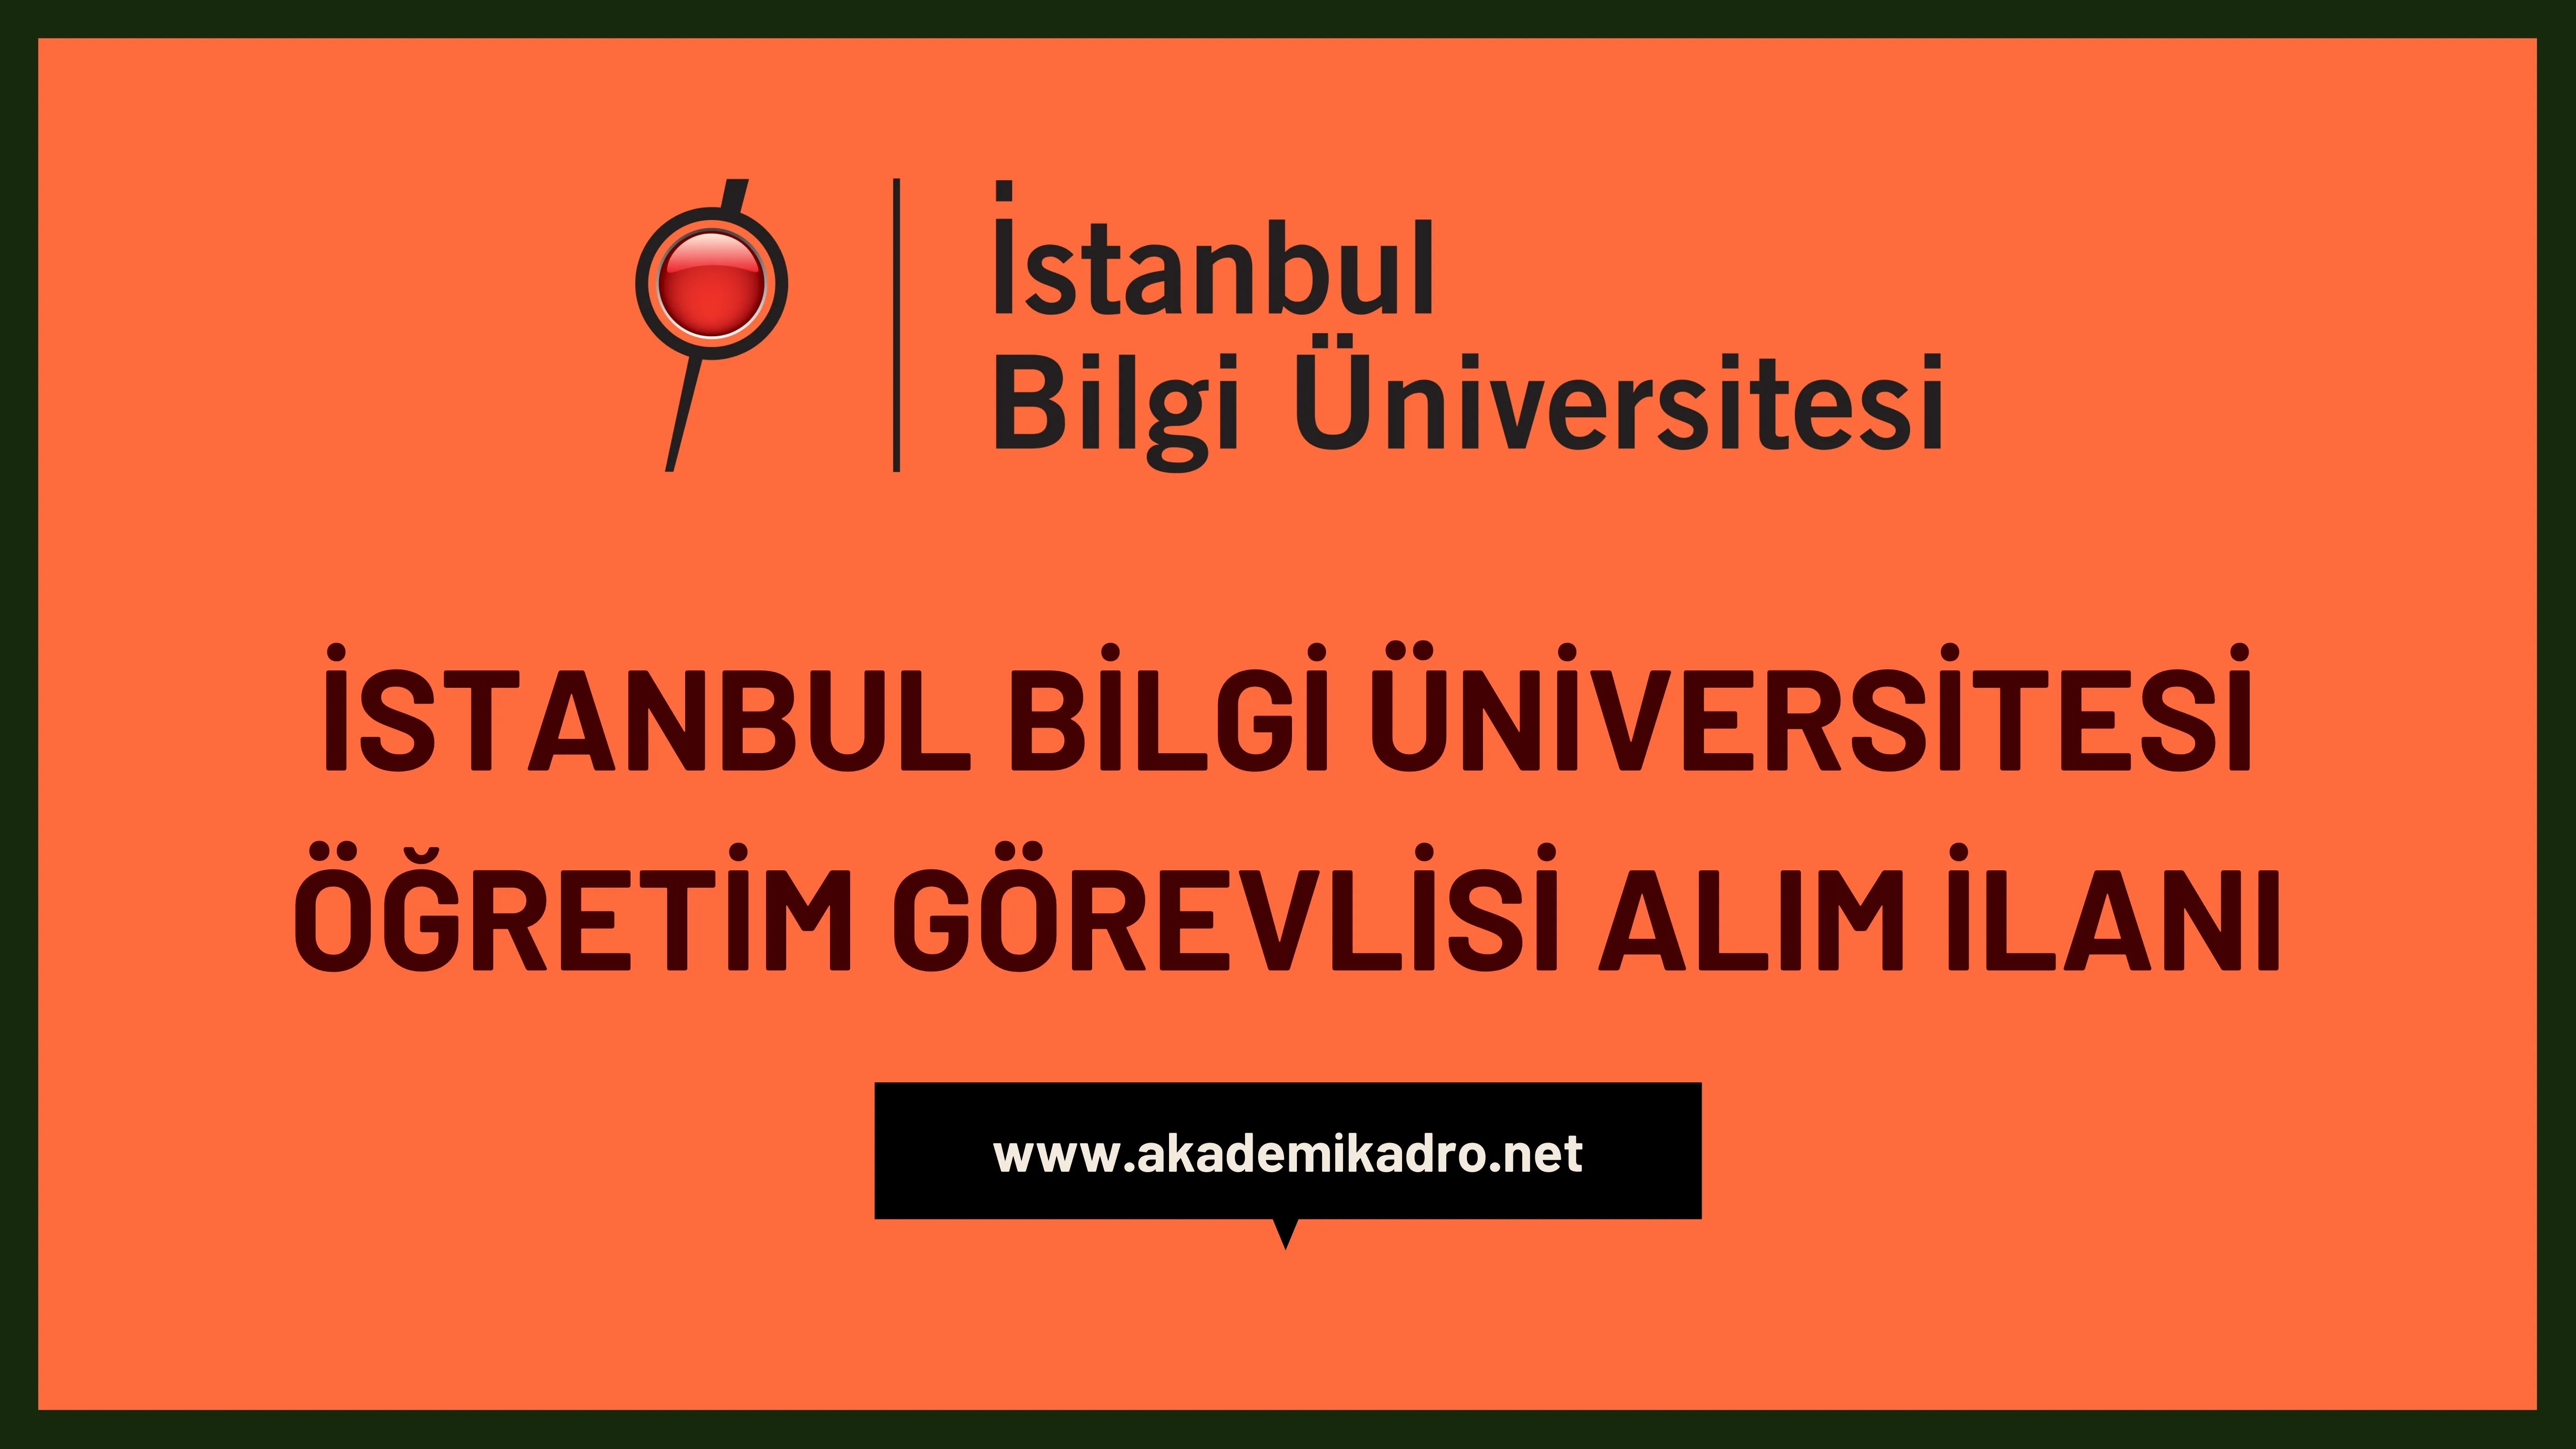 İstanbul Bilgi Üniversitesi Öğretim görevlisi alacak. Son başvuru tarihi 17 Kasım 2022.